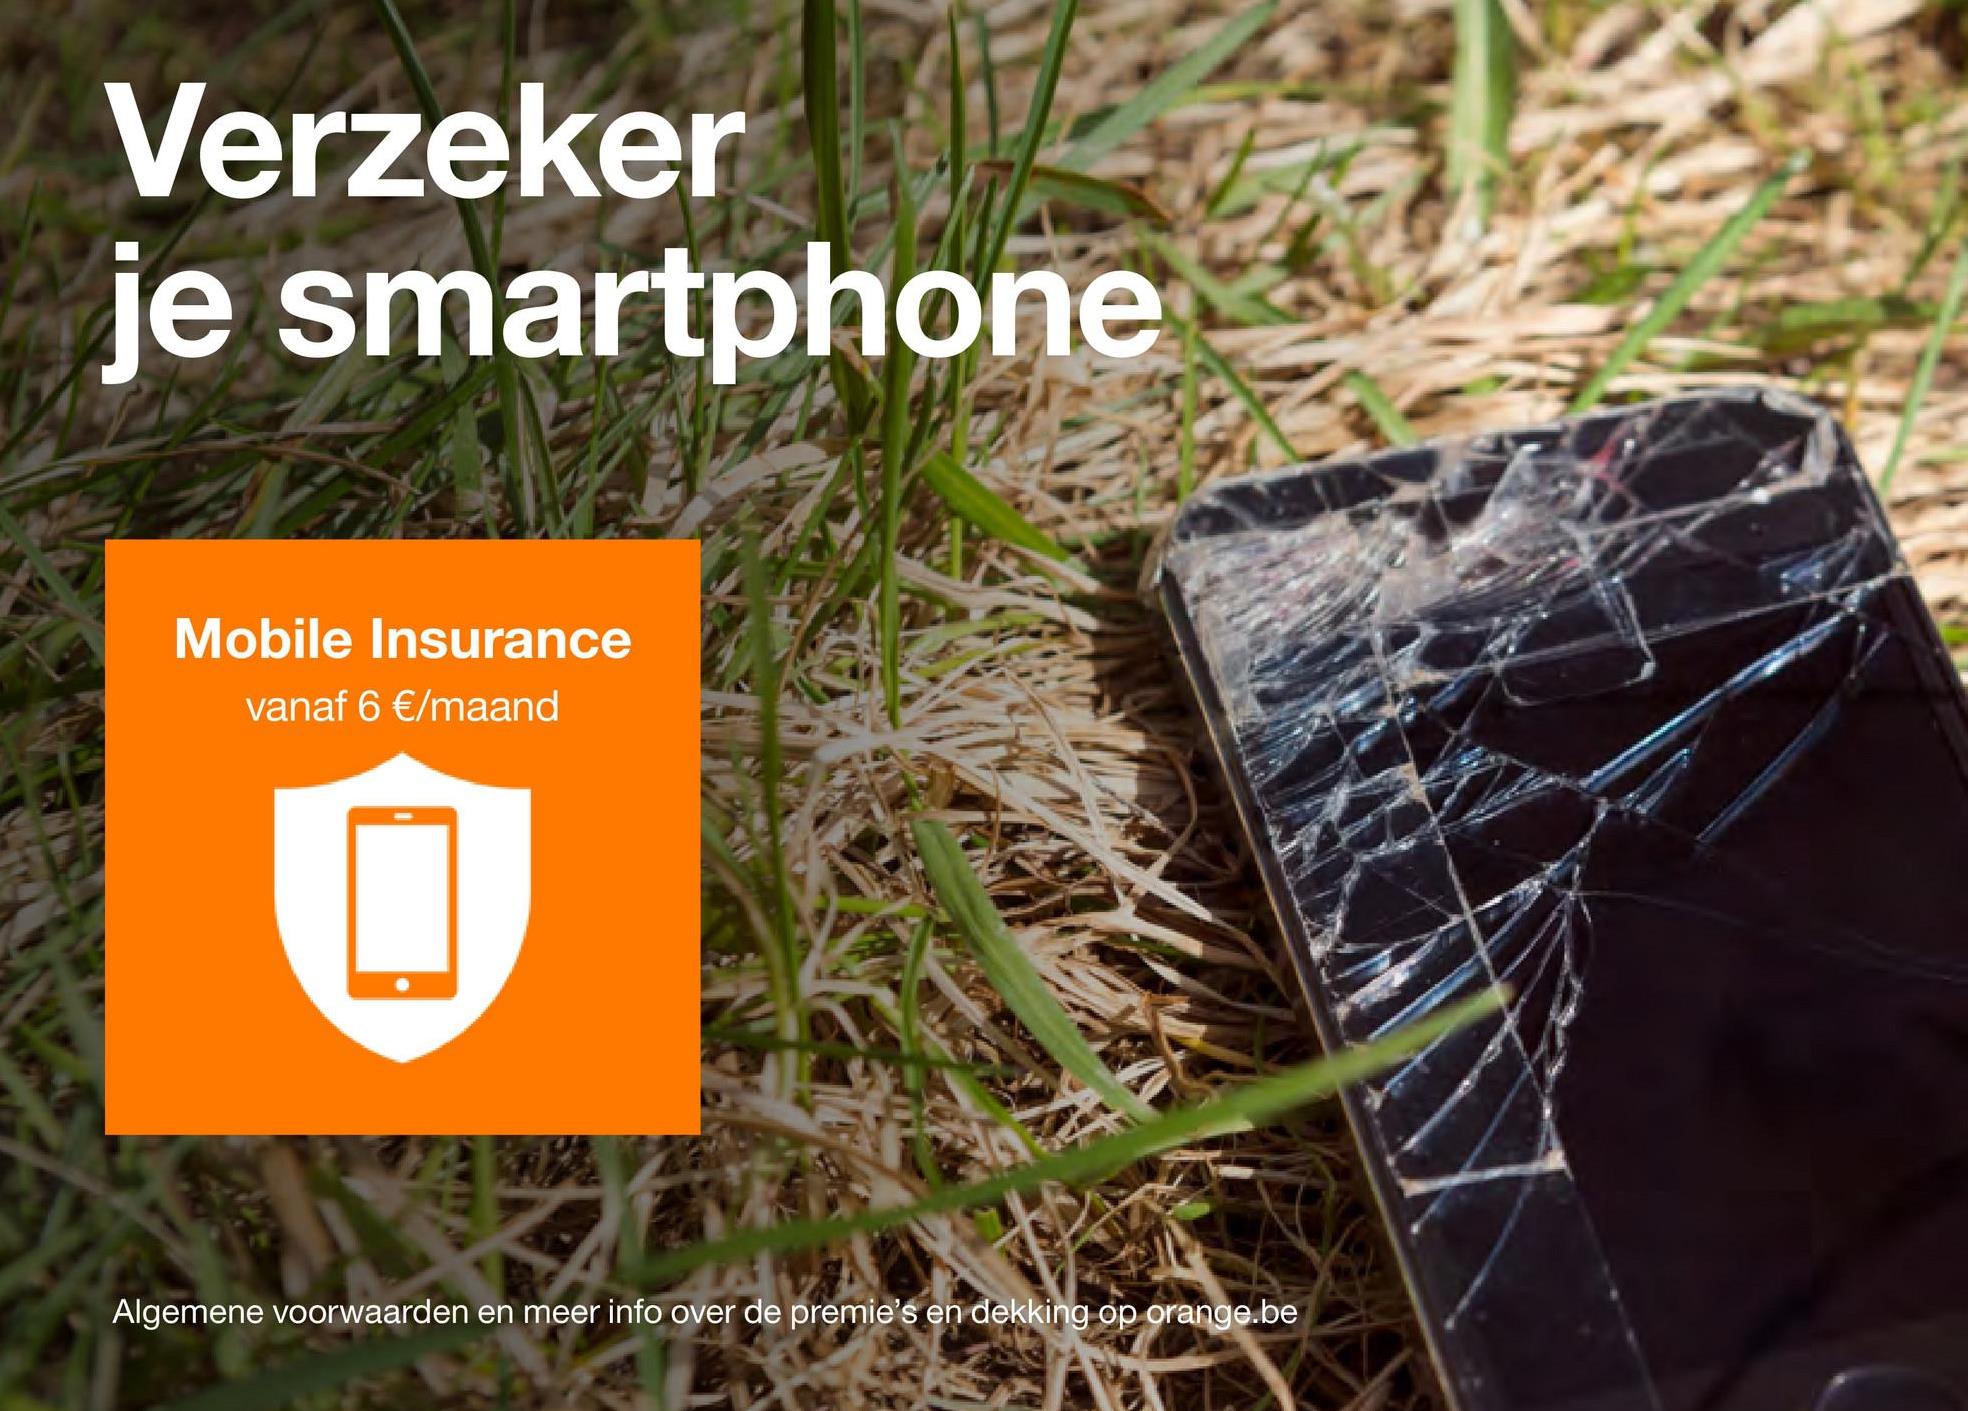 Verzeker
je smartphone
Mobile Insurance
vanaf 6 €/maand
2X
Algemene voorwaarden en meer info over de premie's en dekking op orange.be